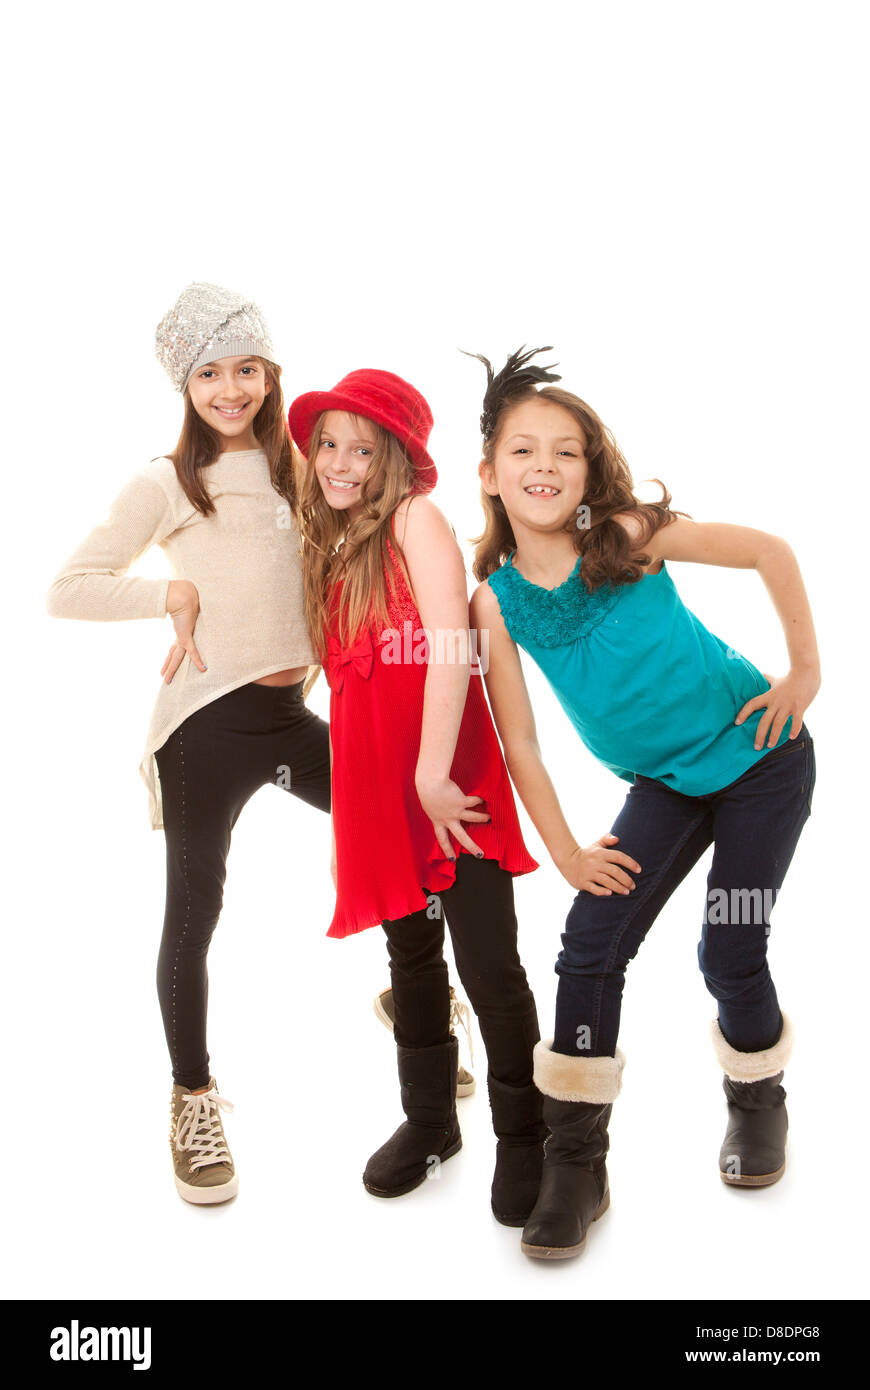 Gruppe von Mode Kids, modische Kinder. Stockfoto